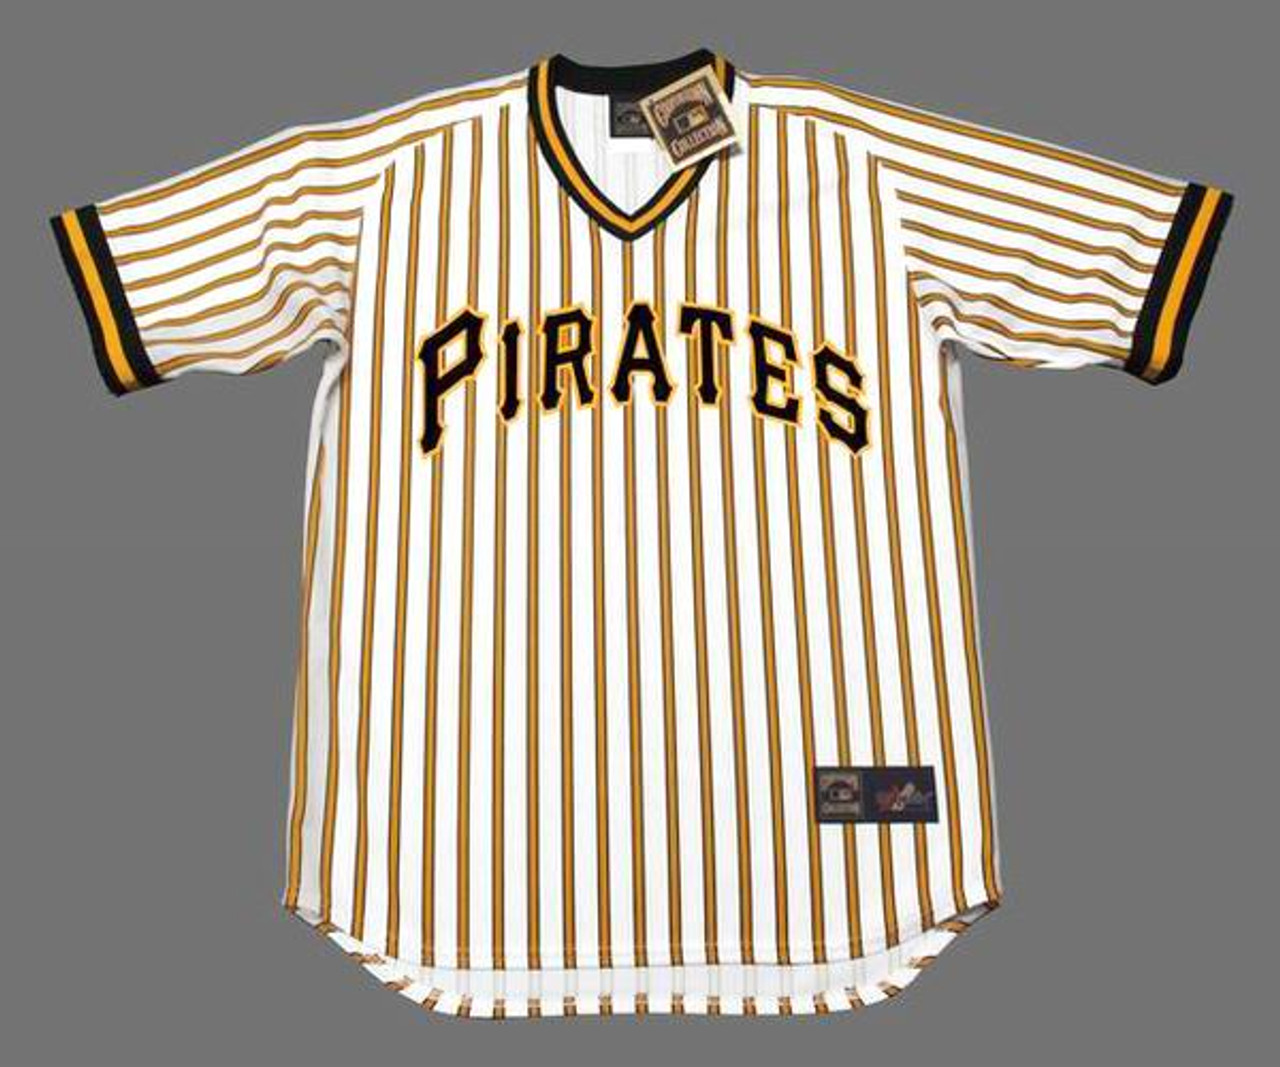 Pirates Throwback Baseball Jersey